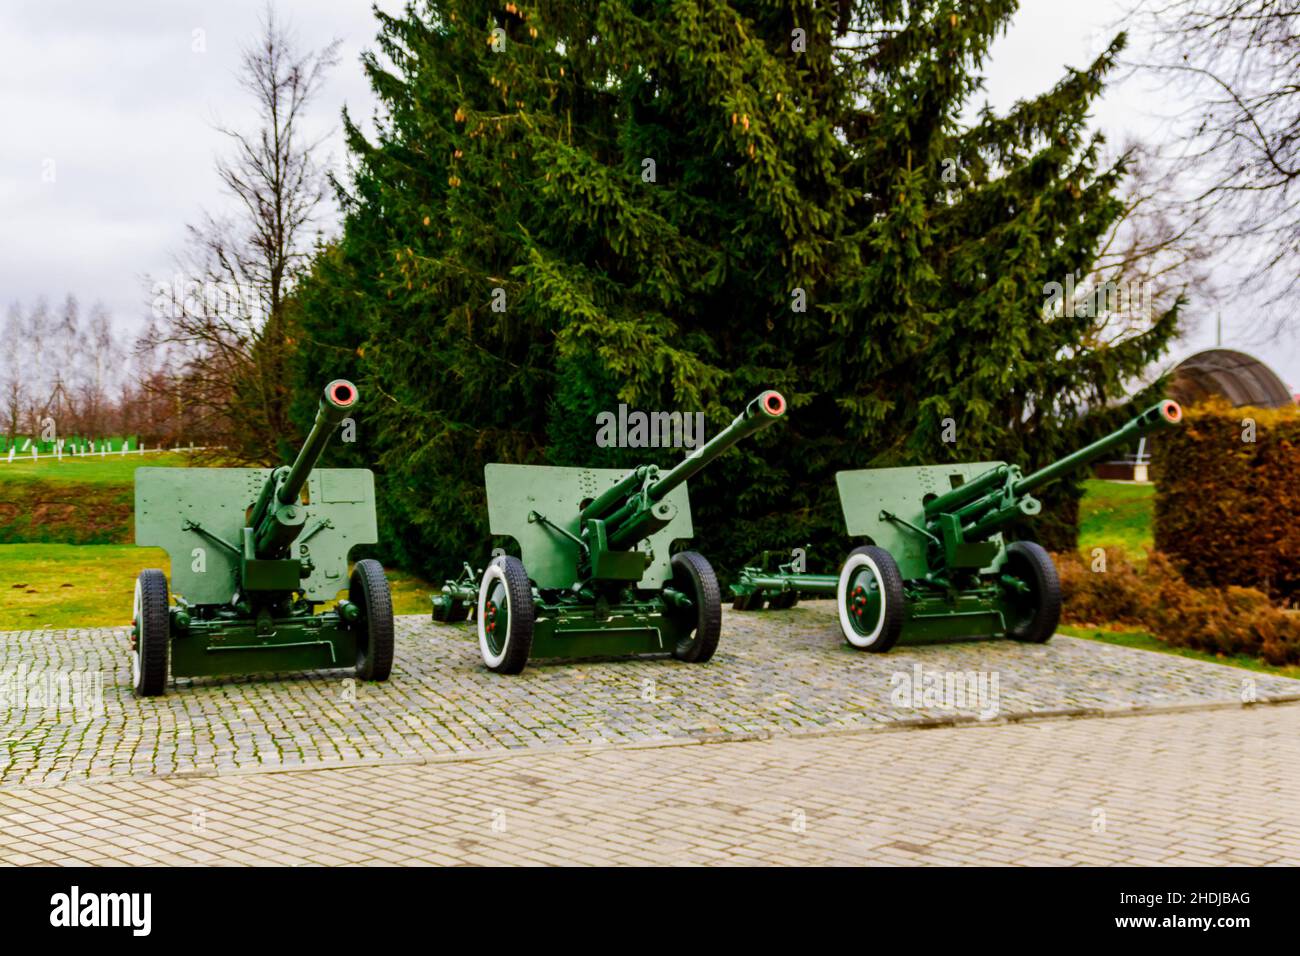 Mémorial de la Seconde Guerre mondiale de Buynichskoe Field.Mogilev, Bélarus - 28 novembre 2021 : trois canons antichars soviétiques de 76 mm m1942 zis-3. Banque D'Images